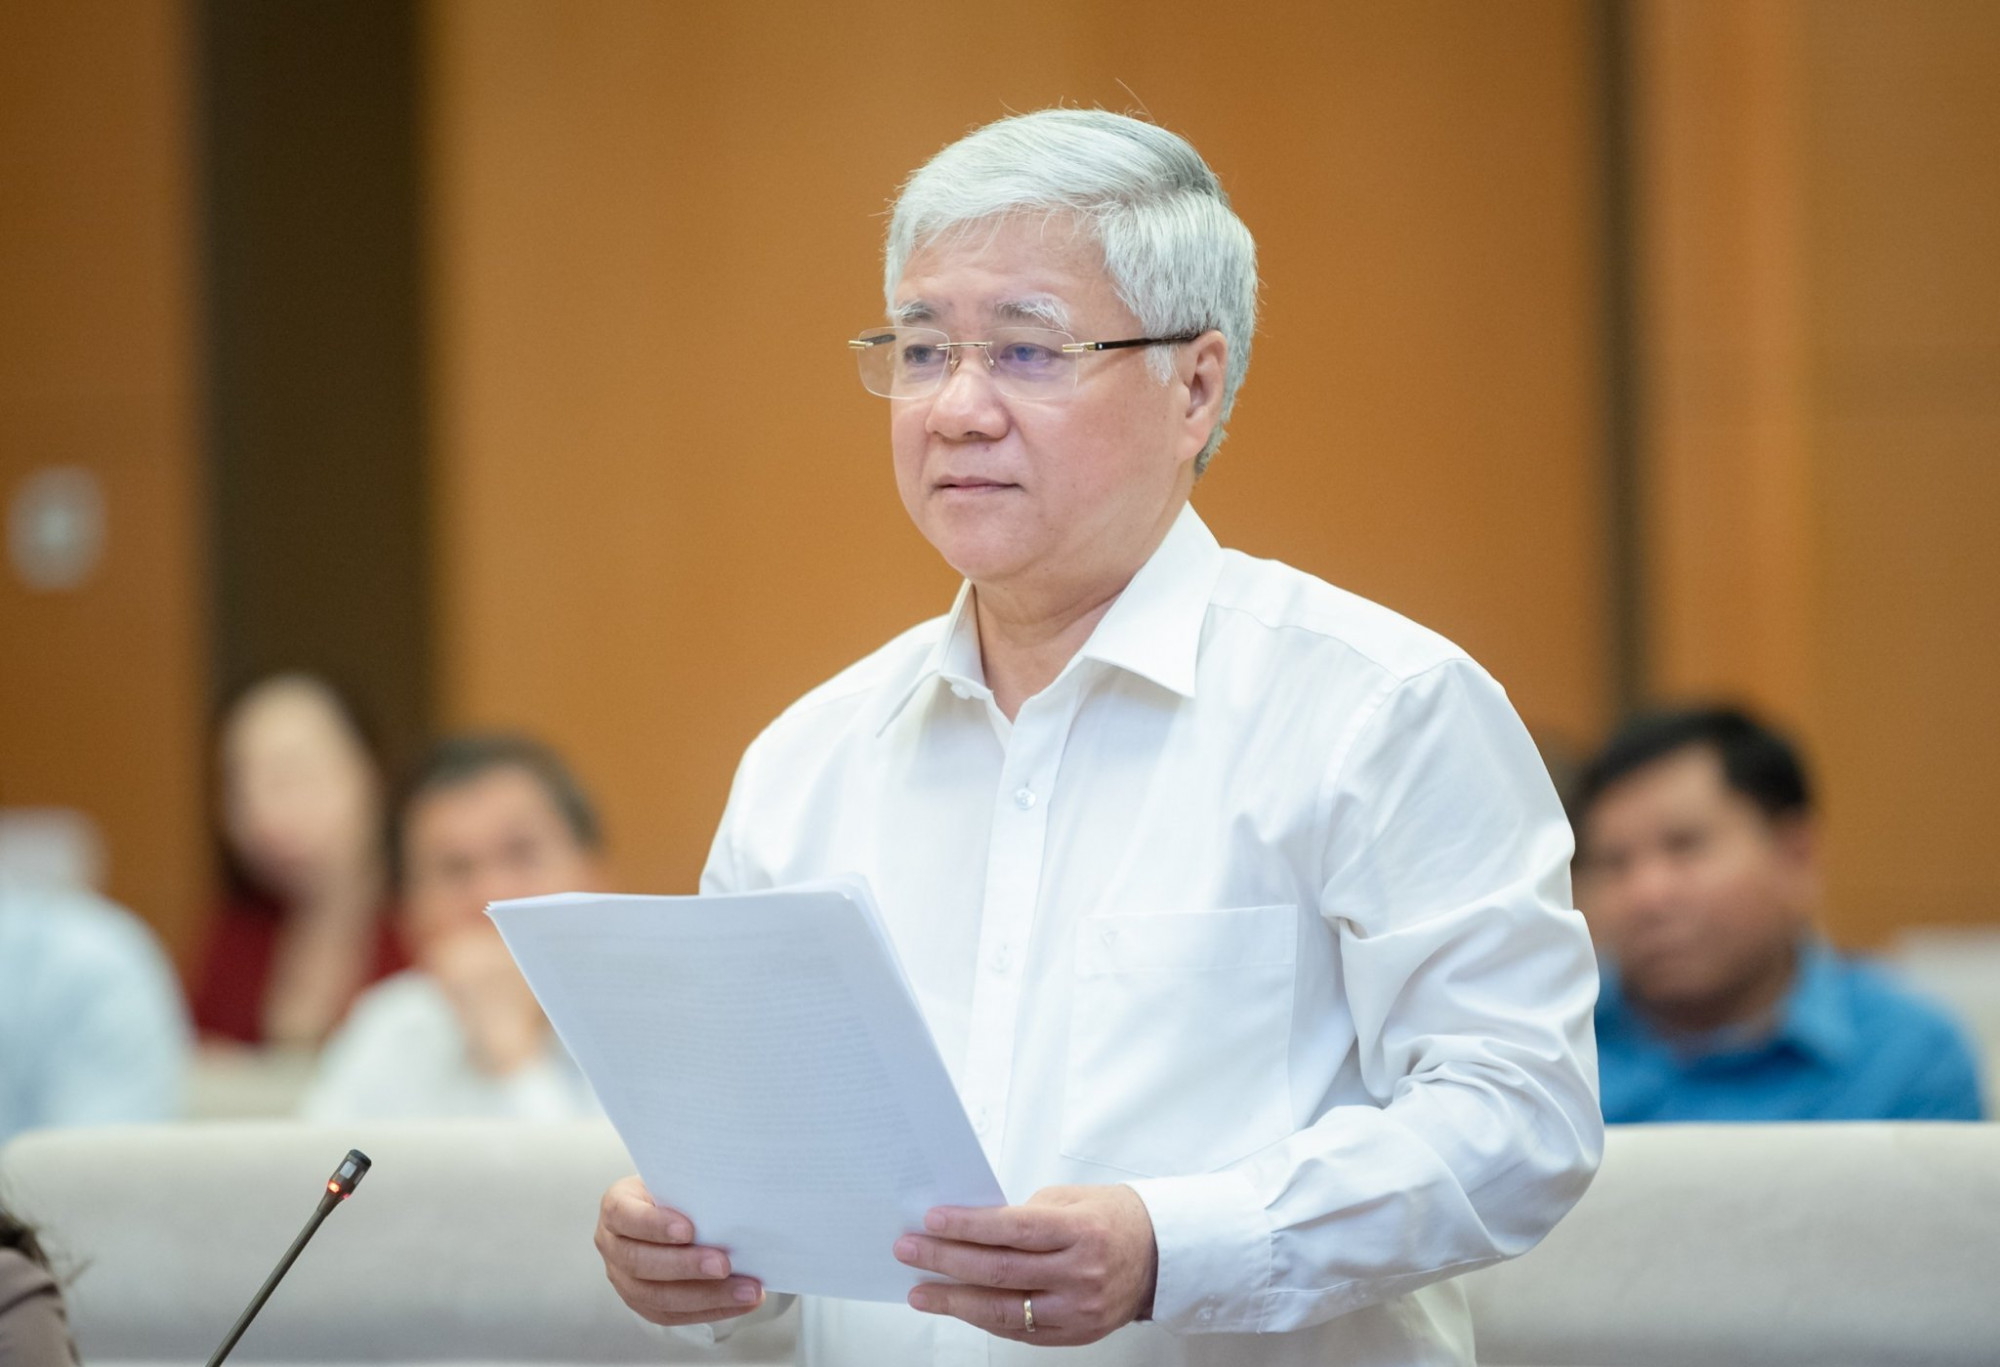 Trình bày dự thảo báo cáo kiến nghị cử tri, ông Đỗ Văn Chiến cho biết người dân lo lắng trước tình trạng cắt giảm lao động, thu nhập giảm...